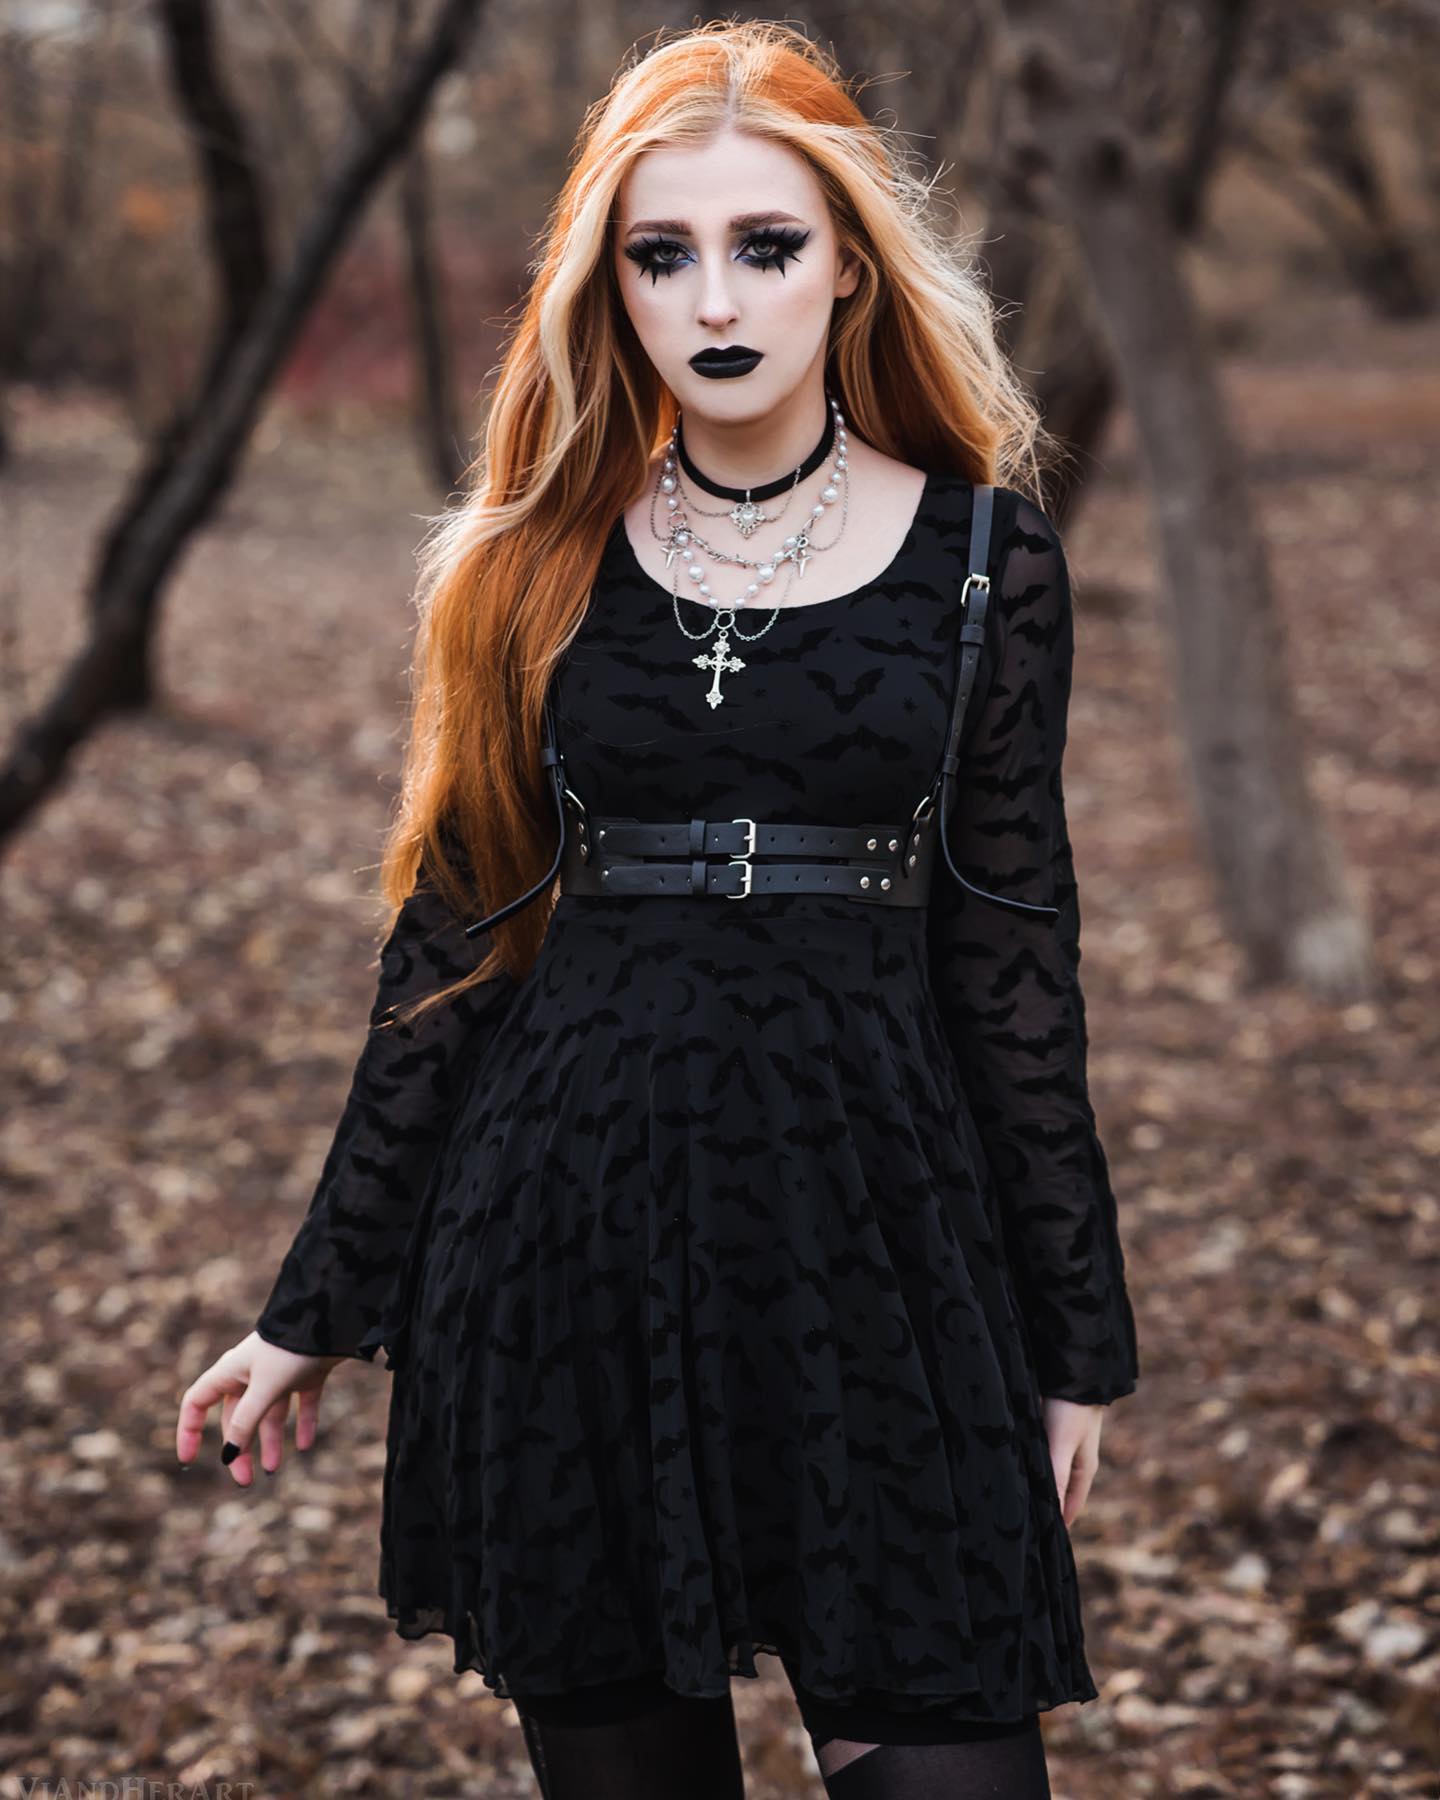 Wracam z urlopu! Psycha zresetowania, ale fizycznie troszkę zmęczona xd dziś stream koło 18 ✨✨✨

Pozdrawiam!

Sukienka gifted @shasilo_clothing

#shasilo #shasiloswirl #goth #gothic #gothgoth #gothicfashion #gothicstyle #gothicbeauty #gothicmodel #gothicgirl 
#gothiclife #gothfashion #gothstyle #gothmodel #occult #occultfashion #alternative #alternativegirl